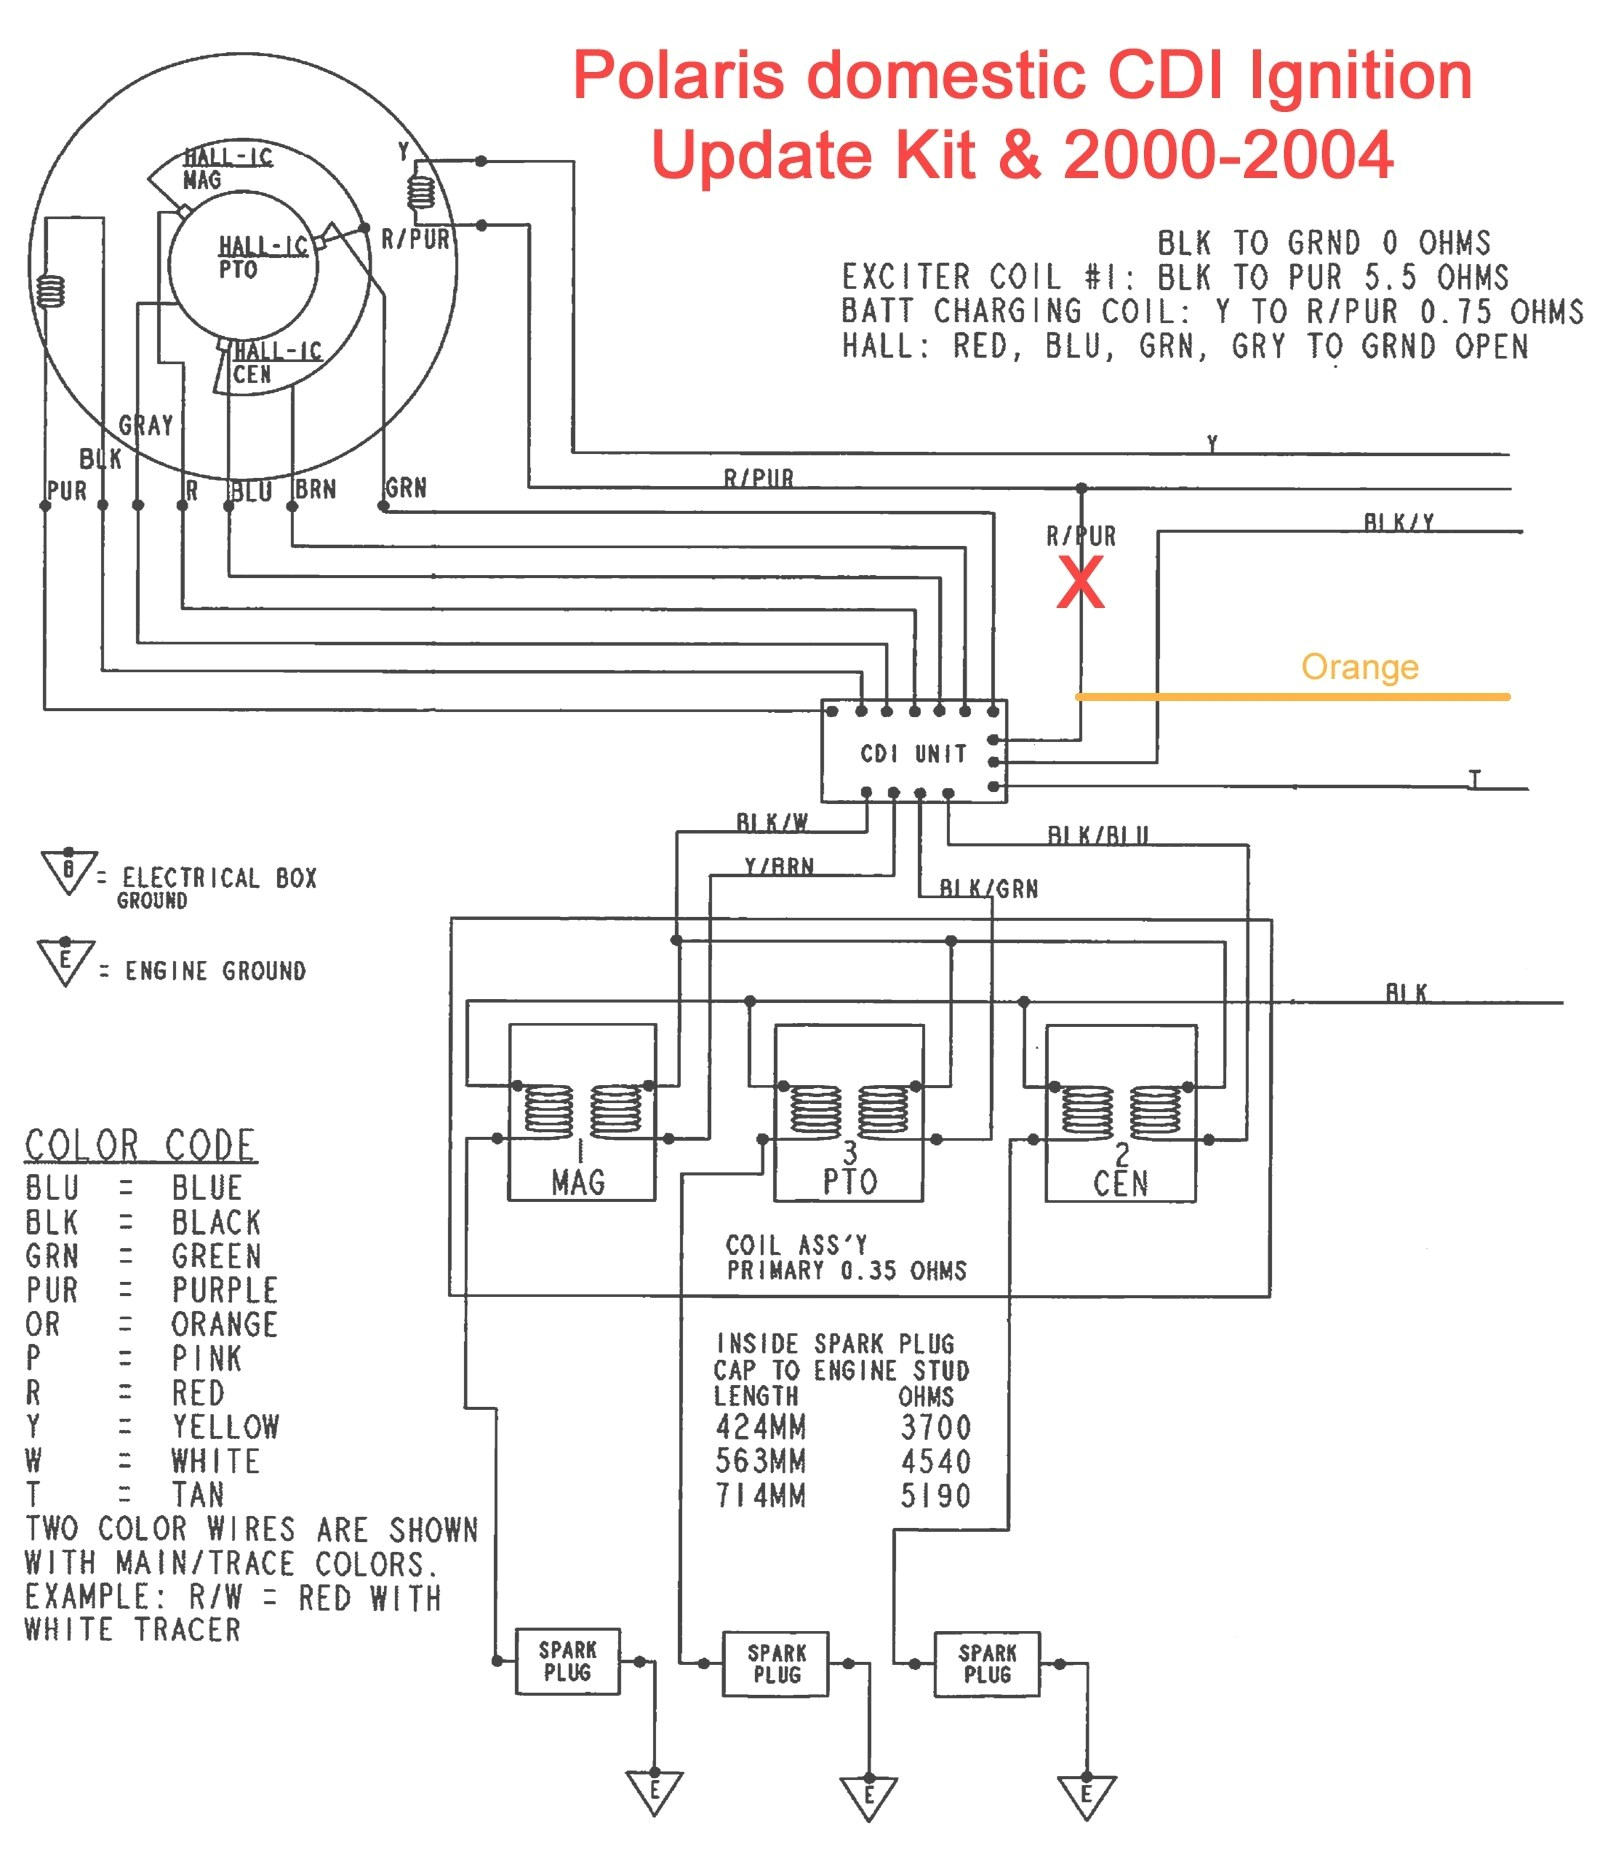 wiring diagram 2001 polaris 250 my wiring diagram wiring diagram 2001 polaris 250